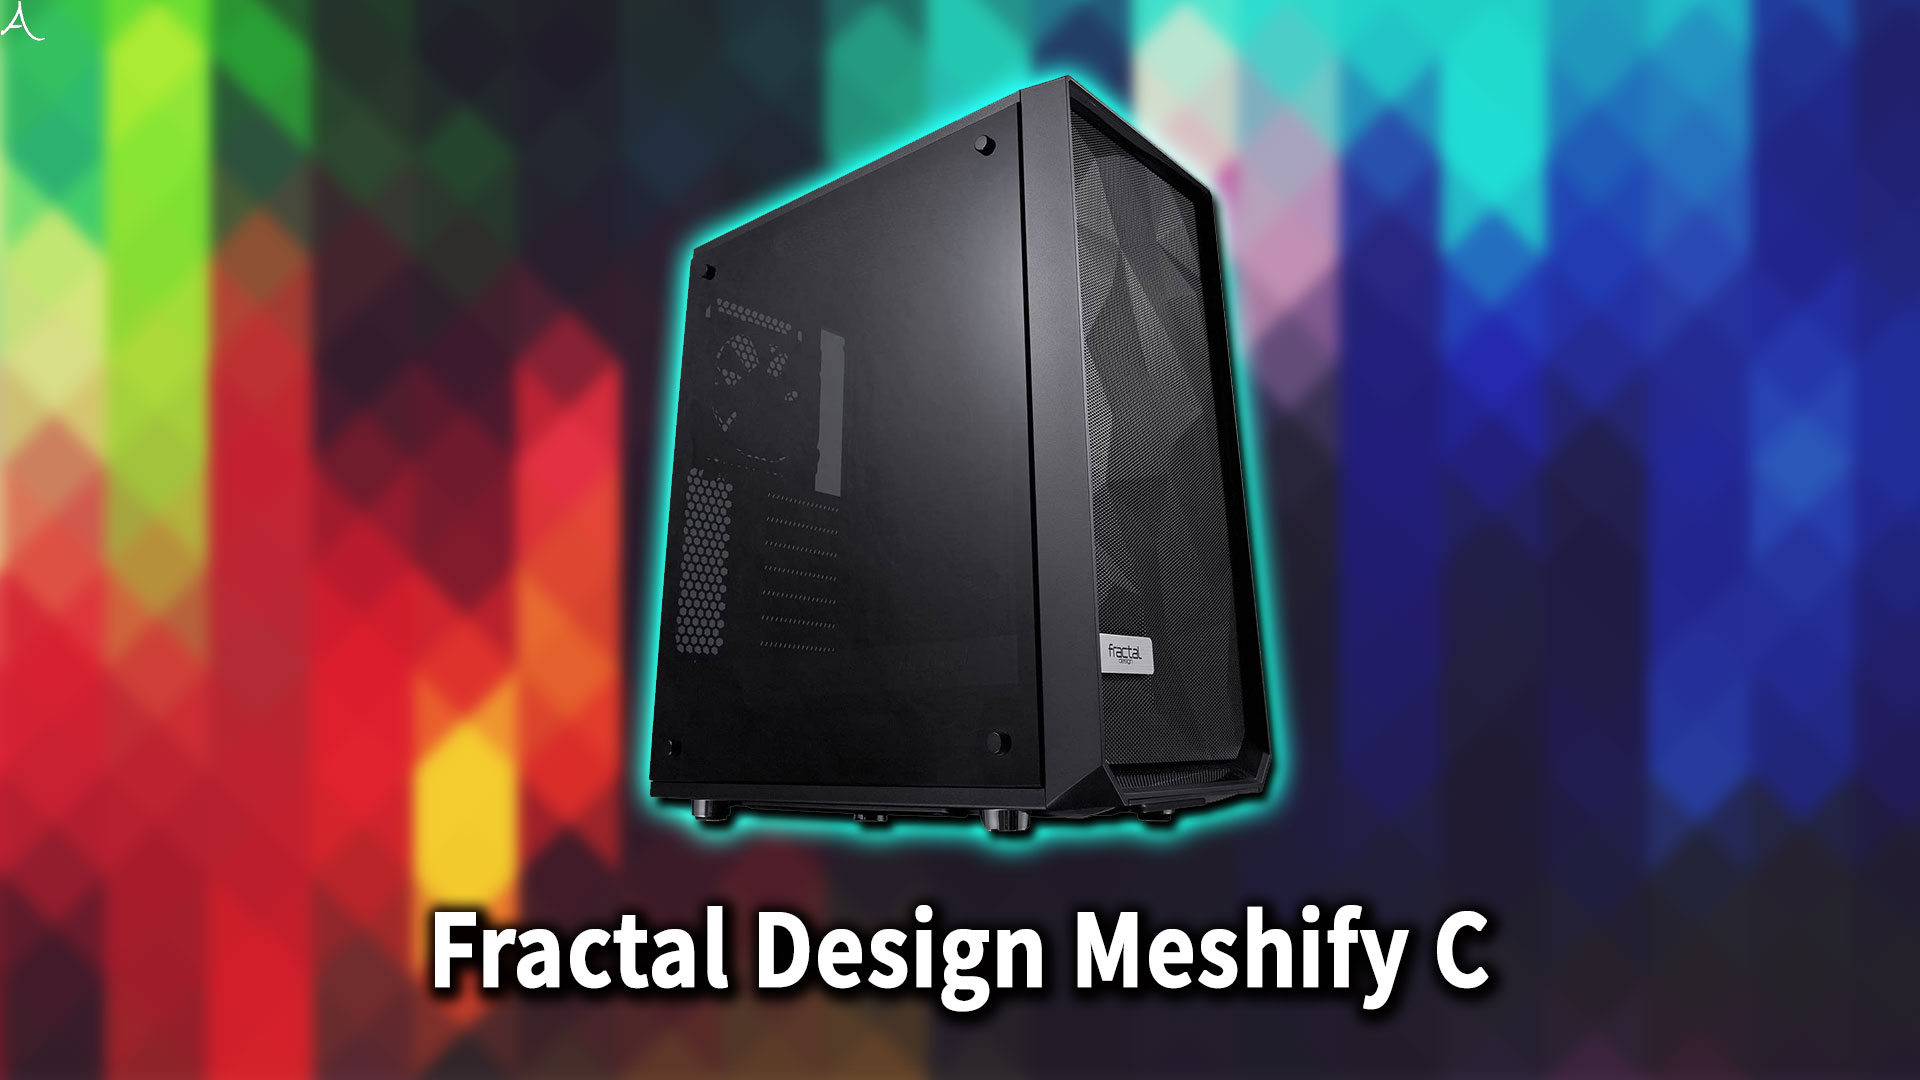 ｢Fractal Design Meshify C｣のサイズ・大きさはどれくらい？